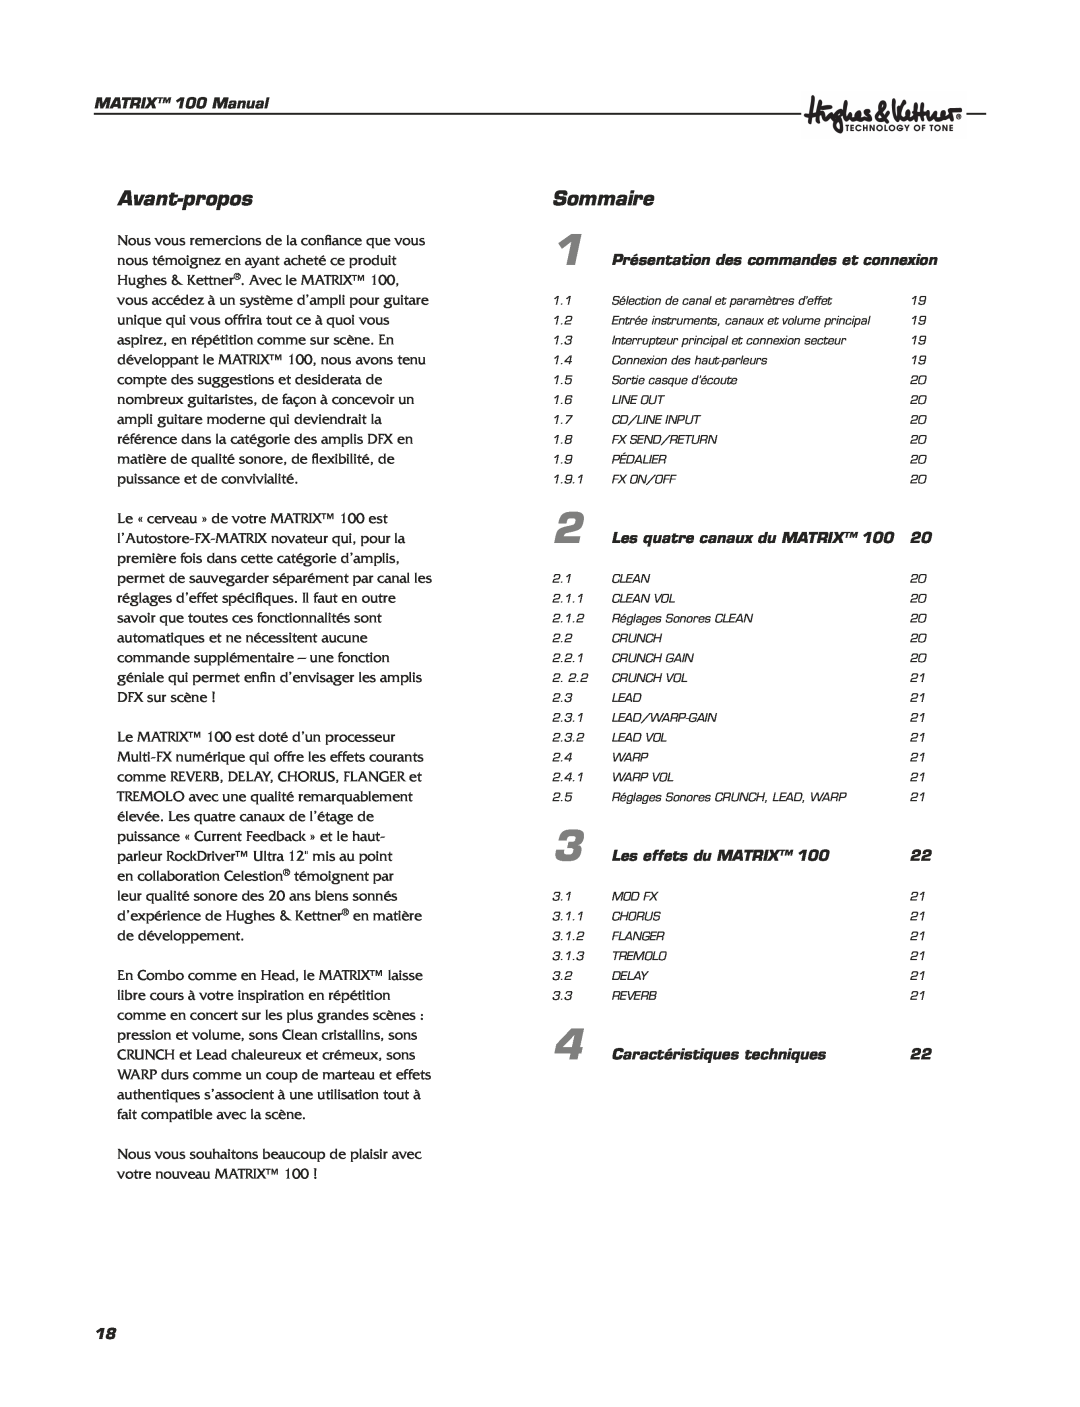 Hughes & Kettner Matrix 100 manual Avant-propos, Sommaire, MATRIX 100 Manual, Présentation des commandes et connexion 